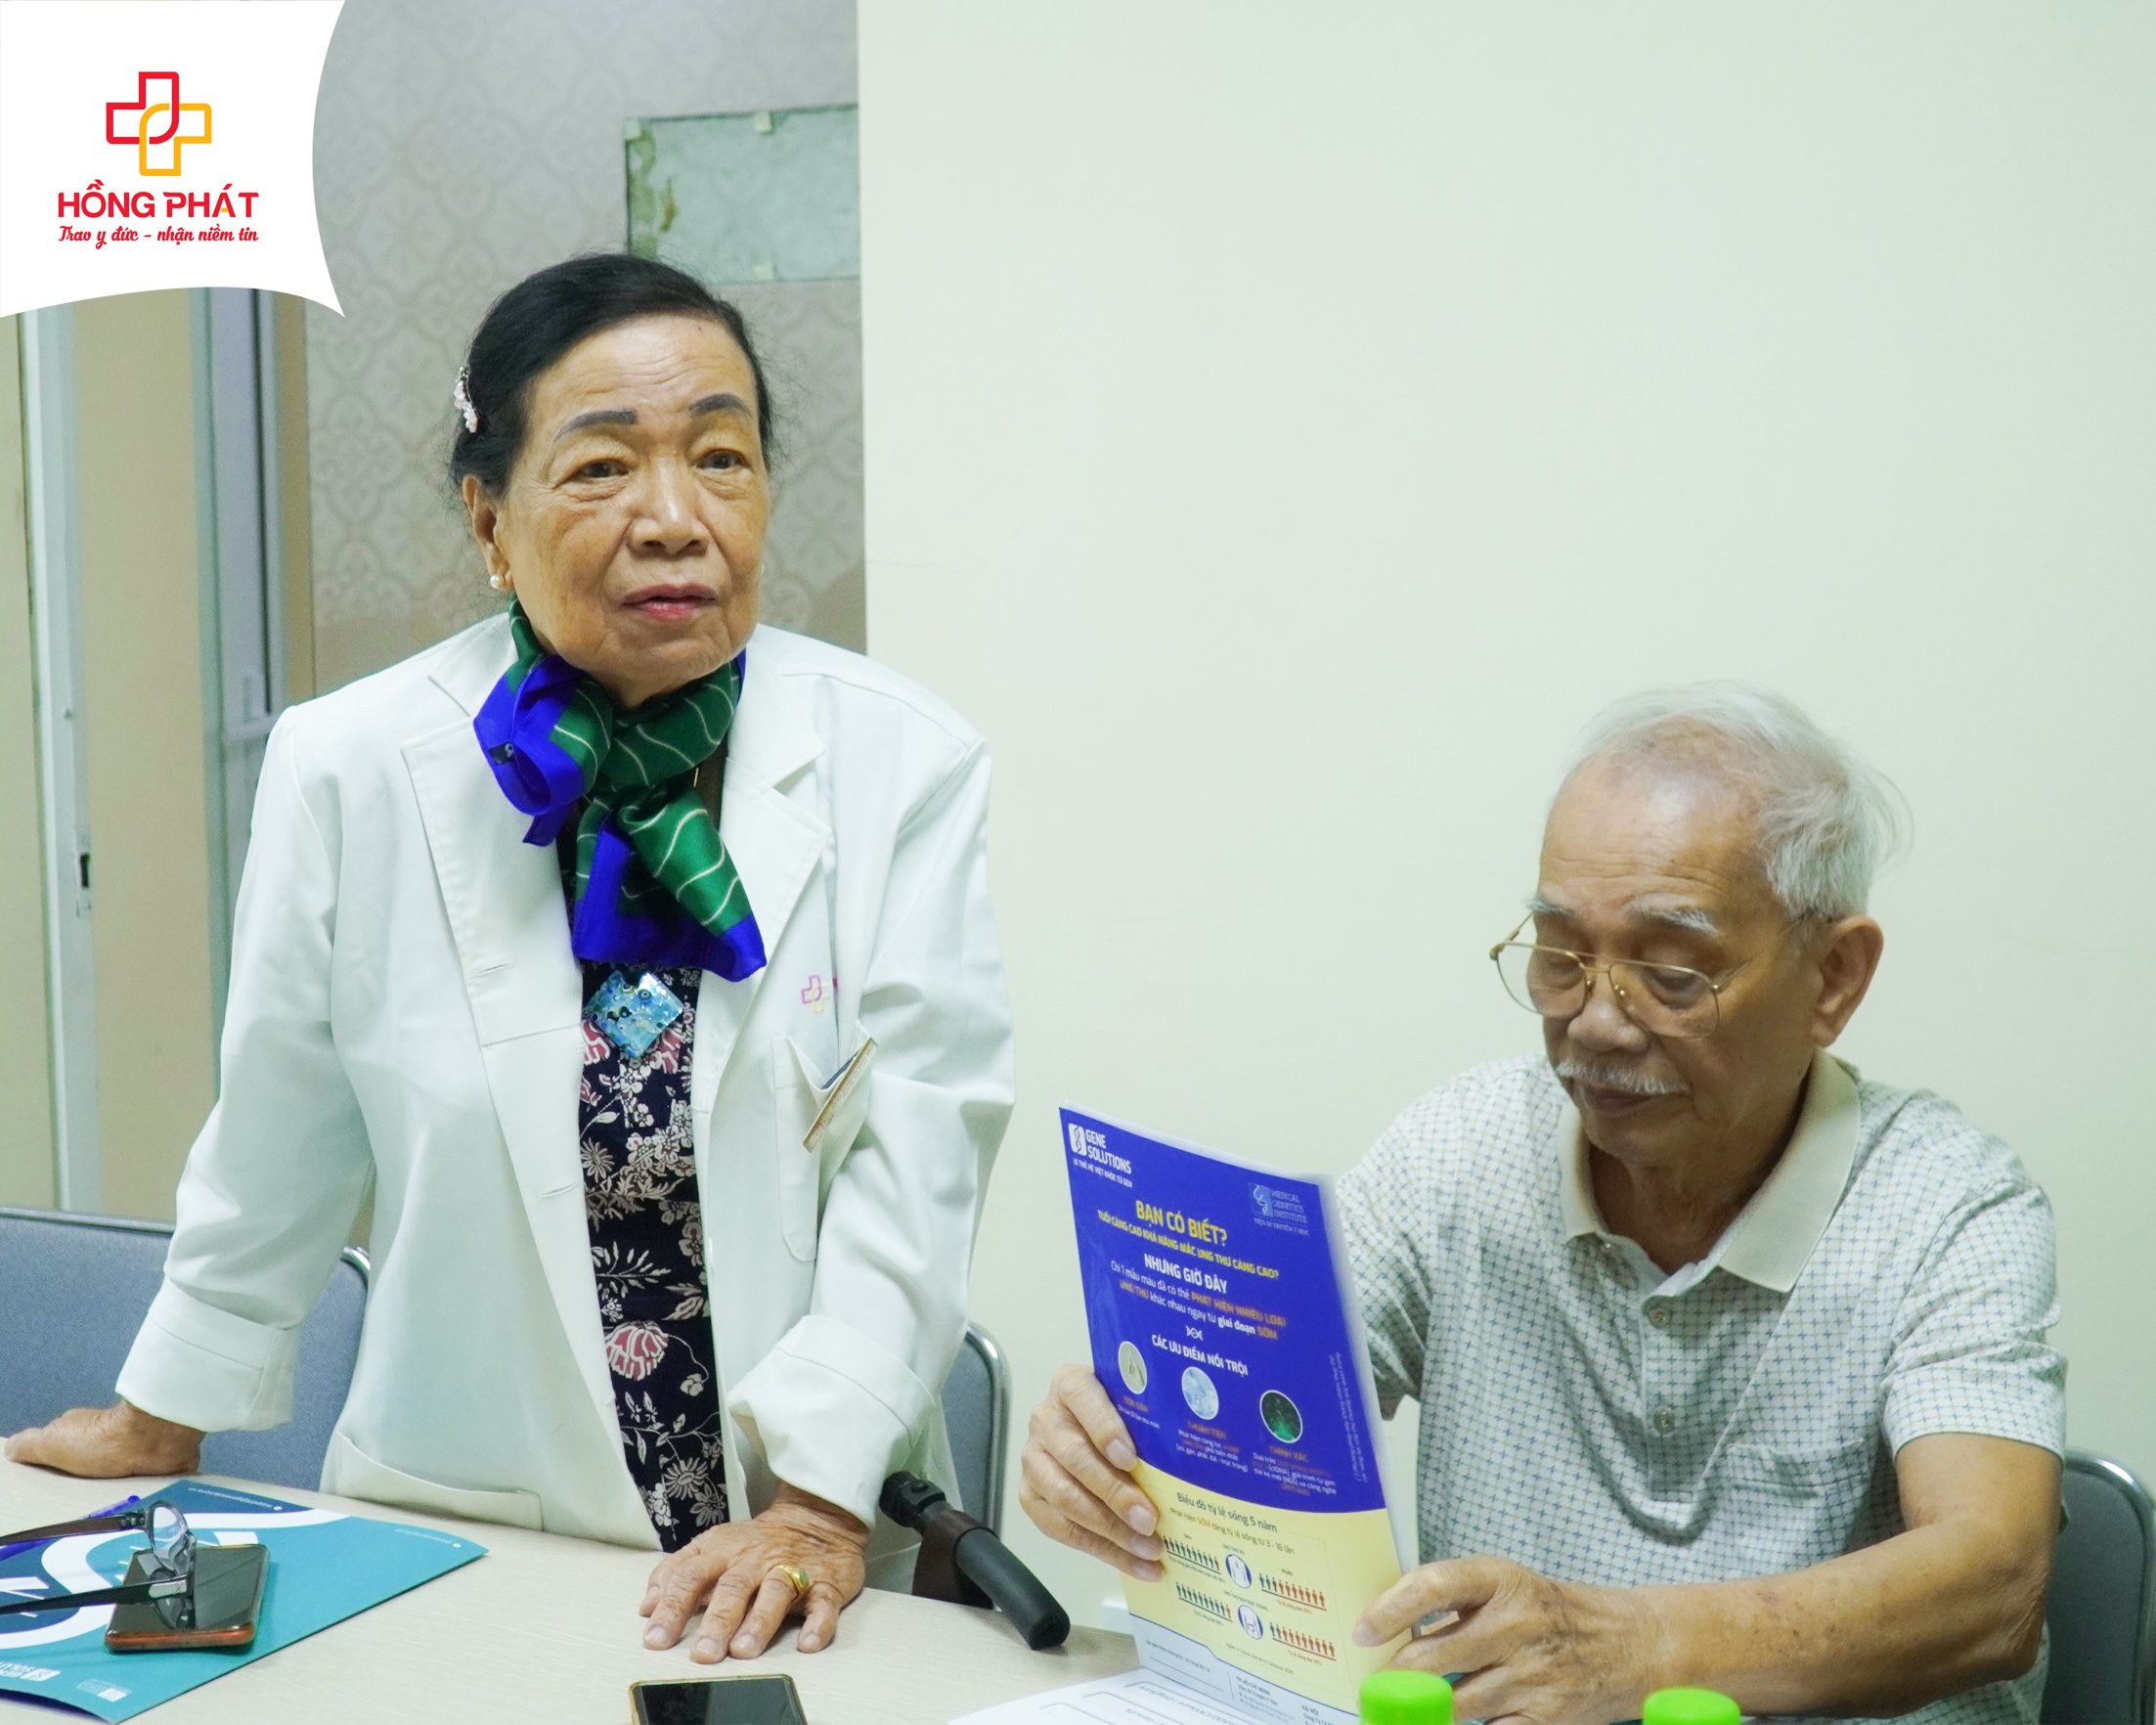 Giám đốc Bệnh viện Đa khoa Hồng Phát Phạm Thị Ngọc Bích chia sẻ